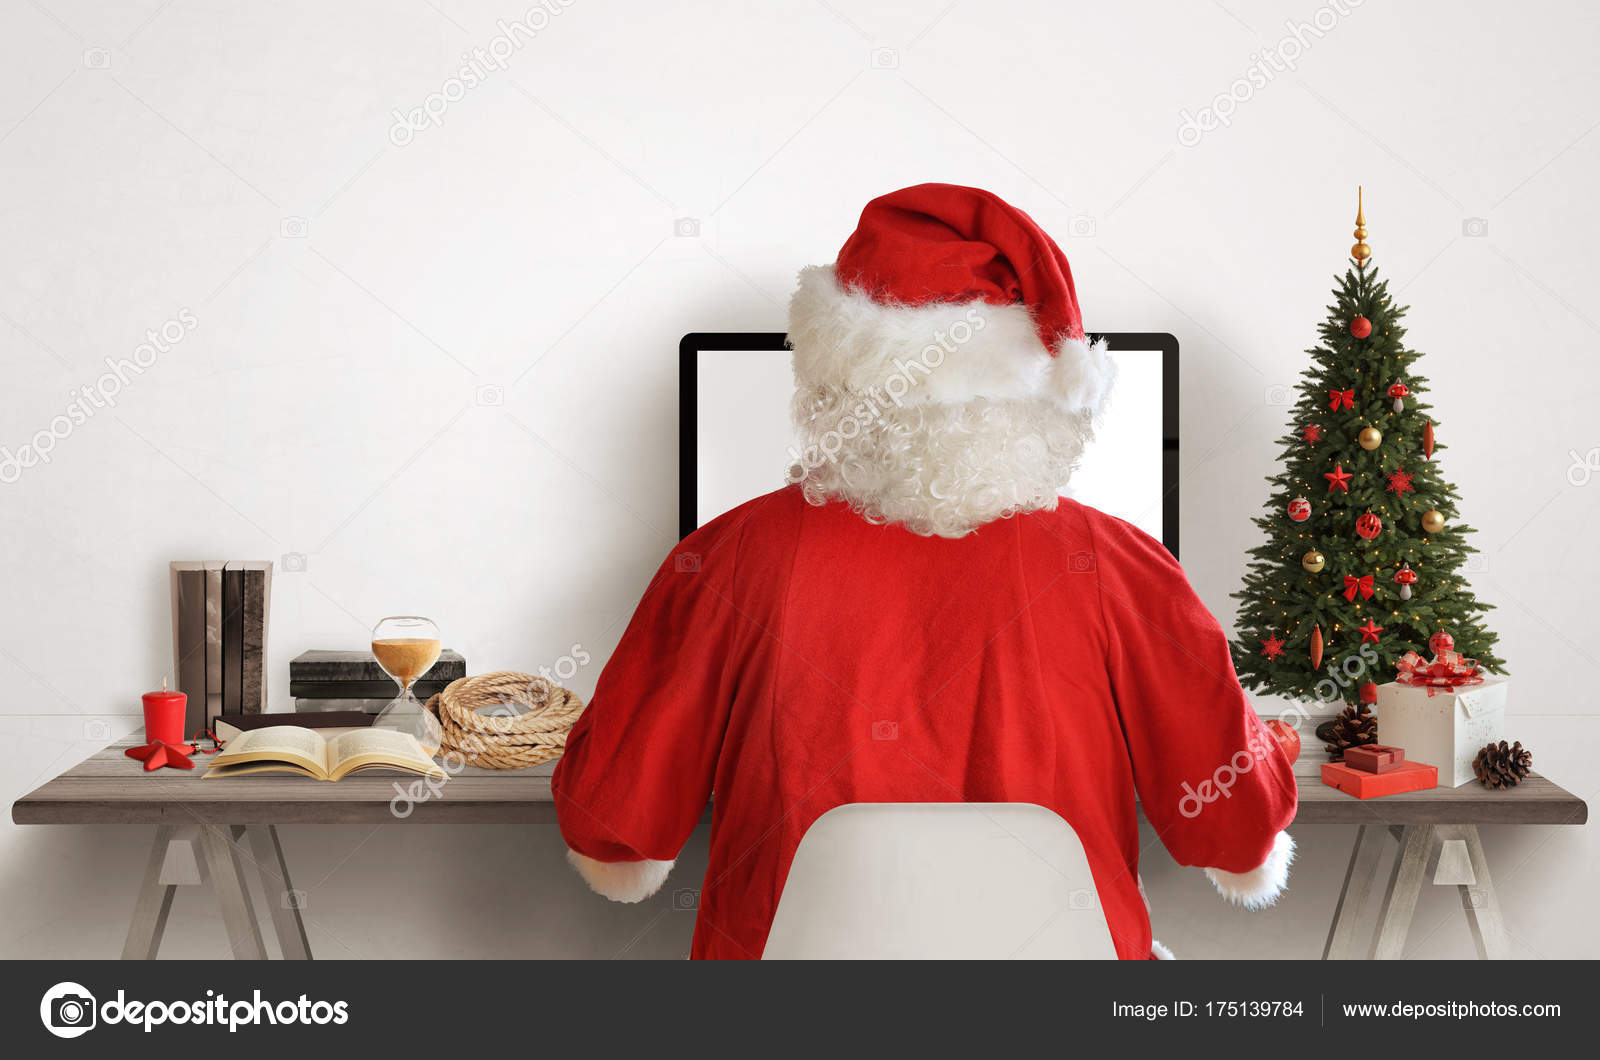 Santa Claus Work His Computer Christmas Tree Gifts Canta Work